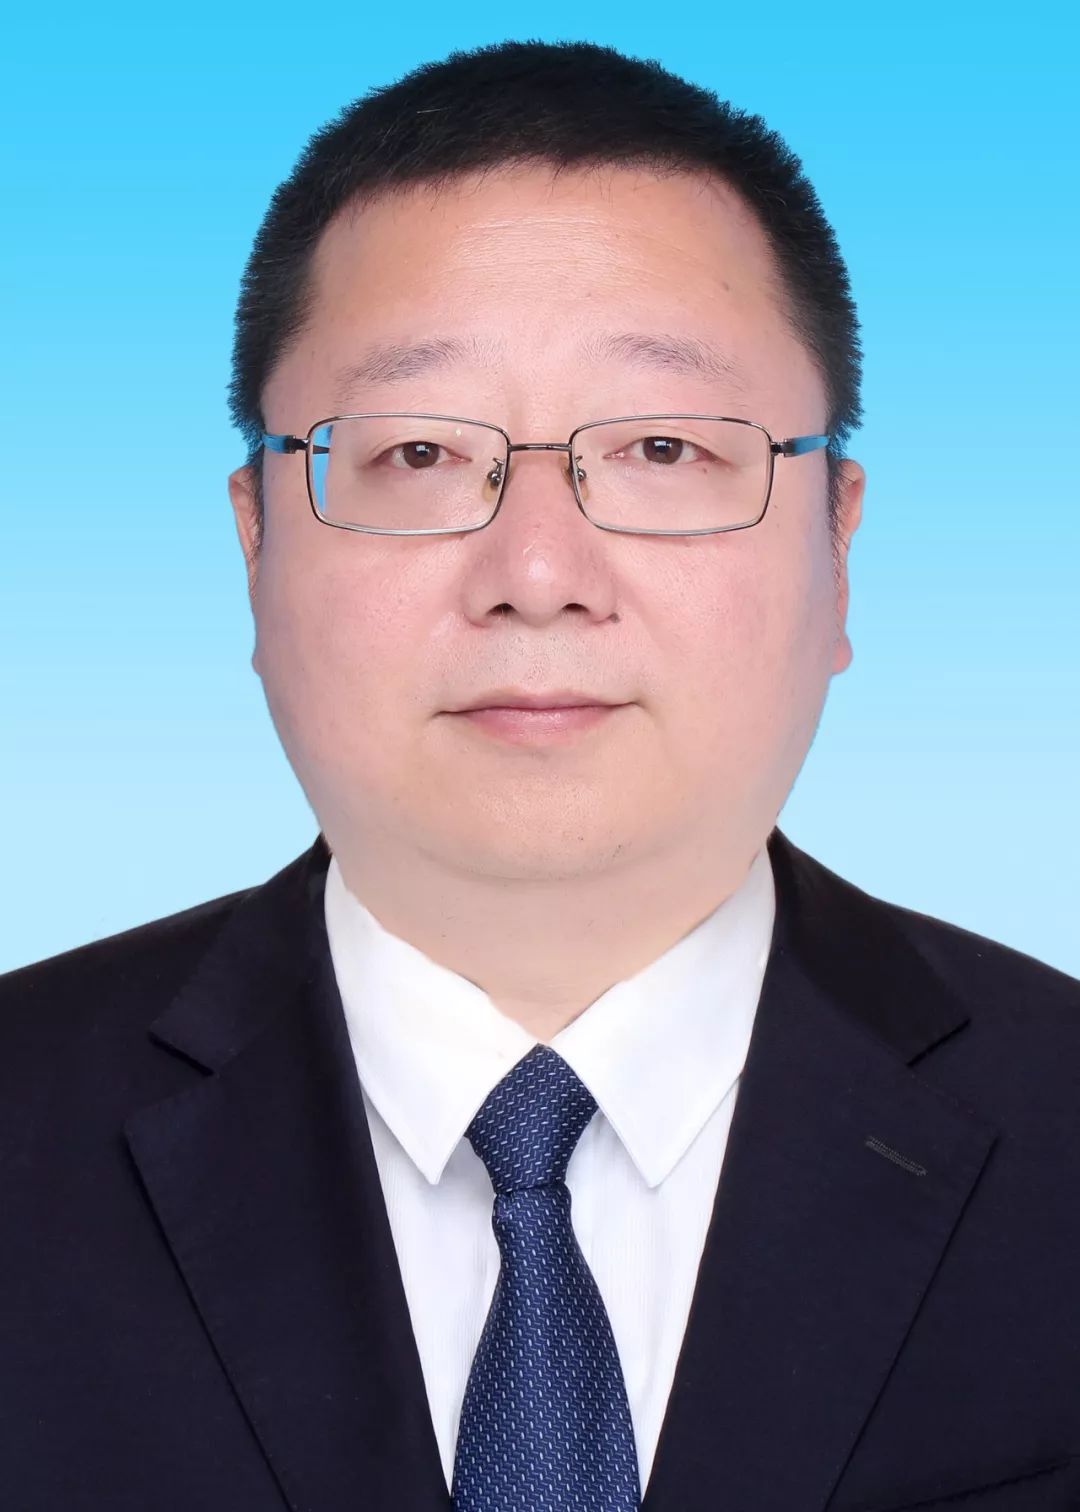 市委书记刘超向新当选的市人民政府市长元方颁发当选证书